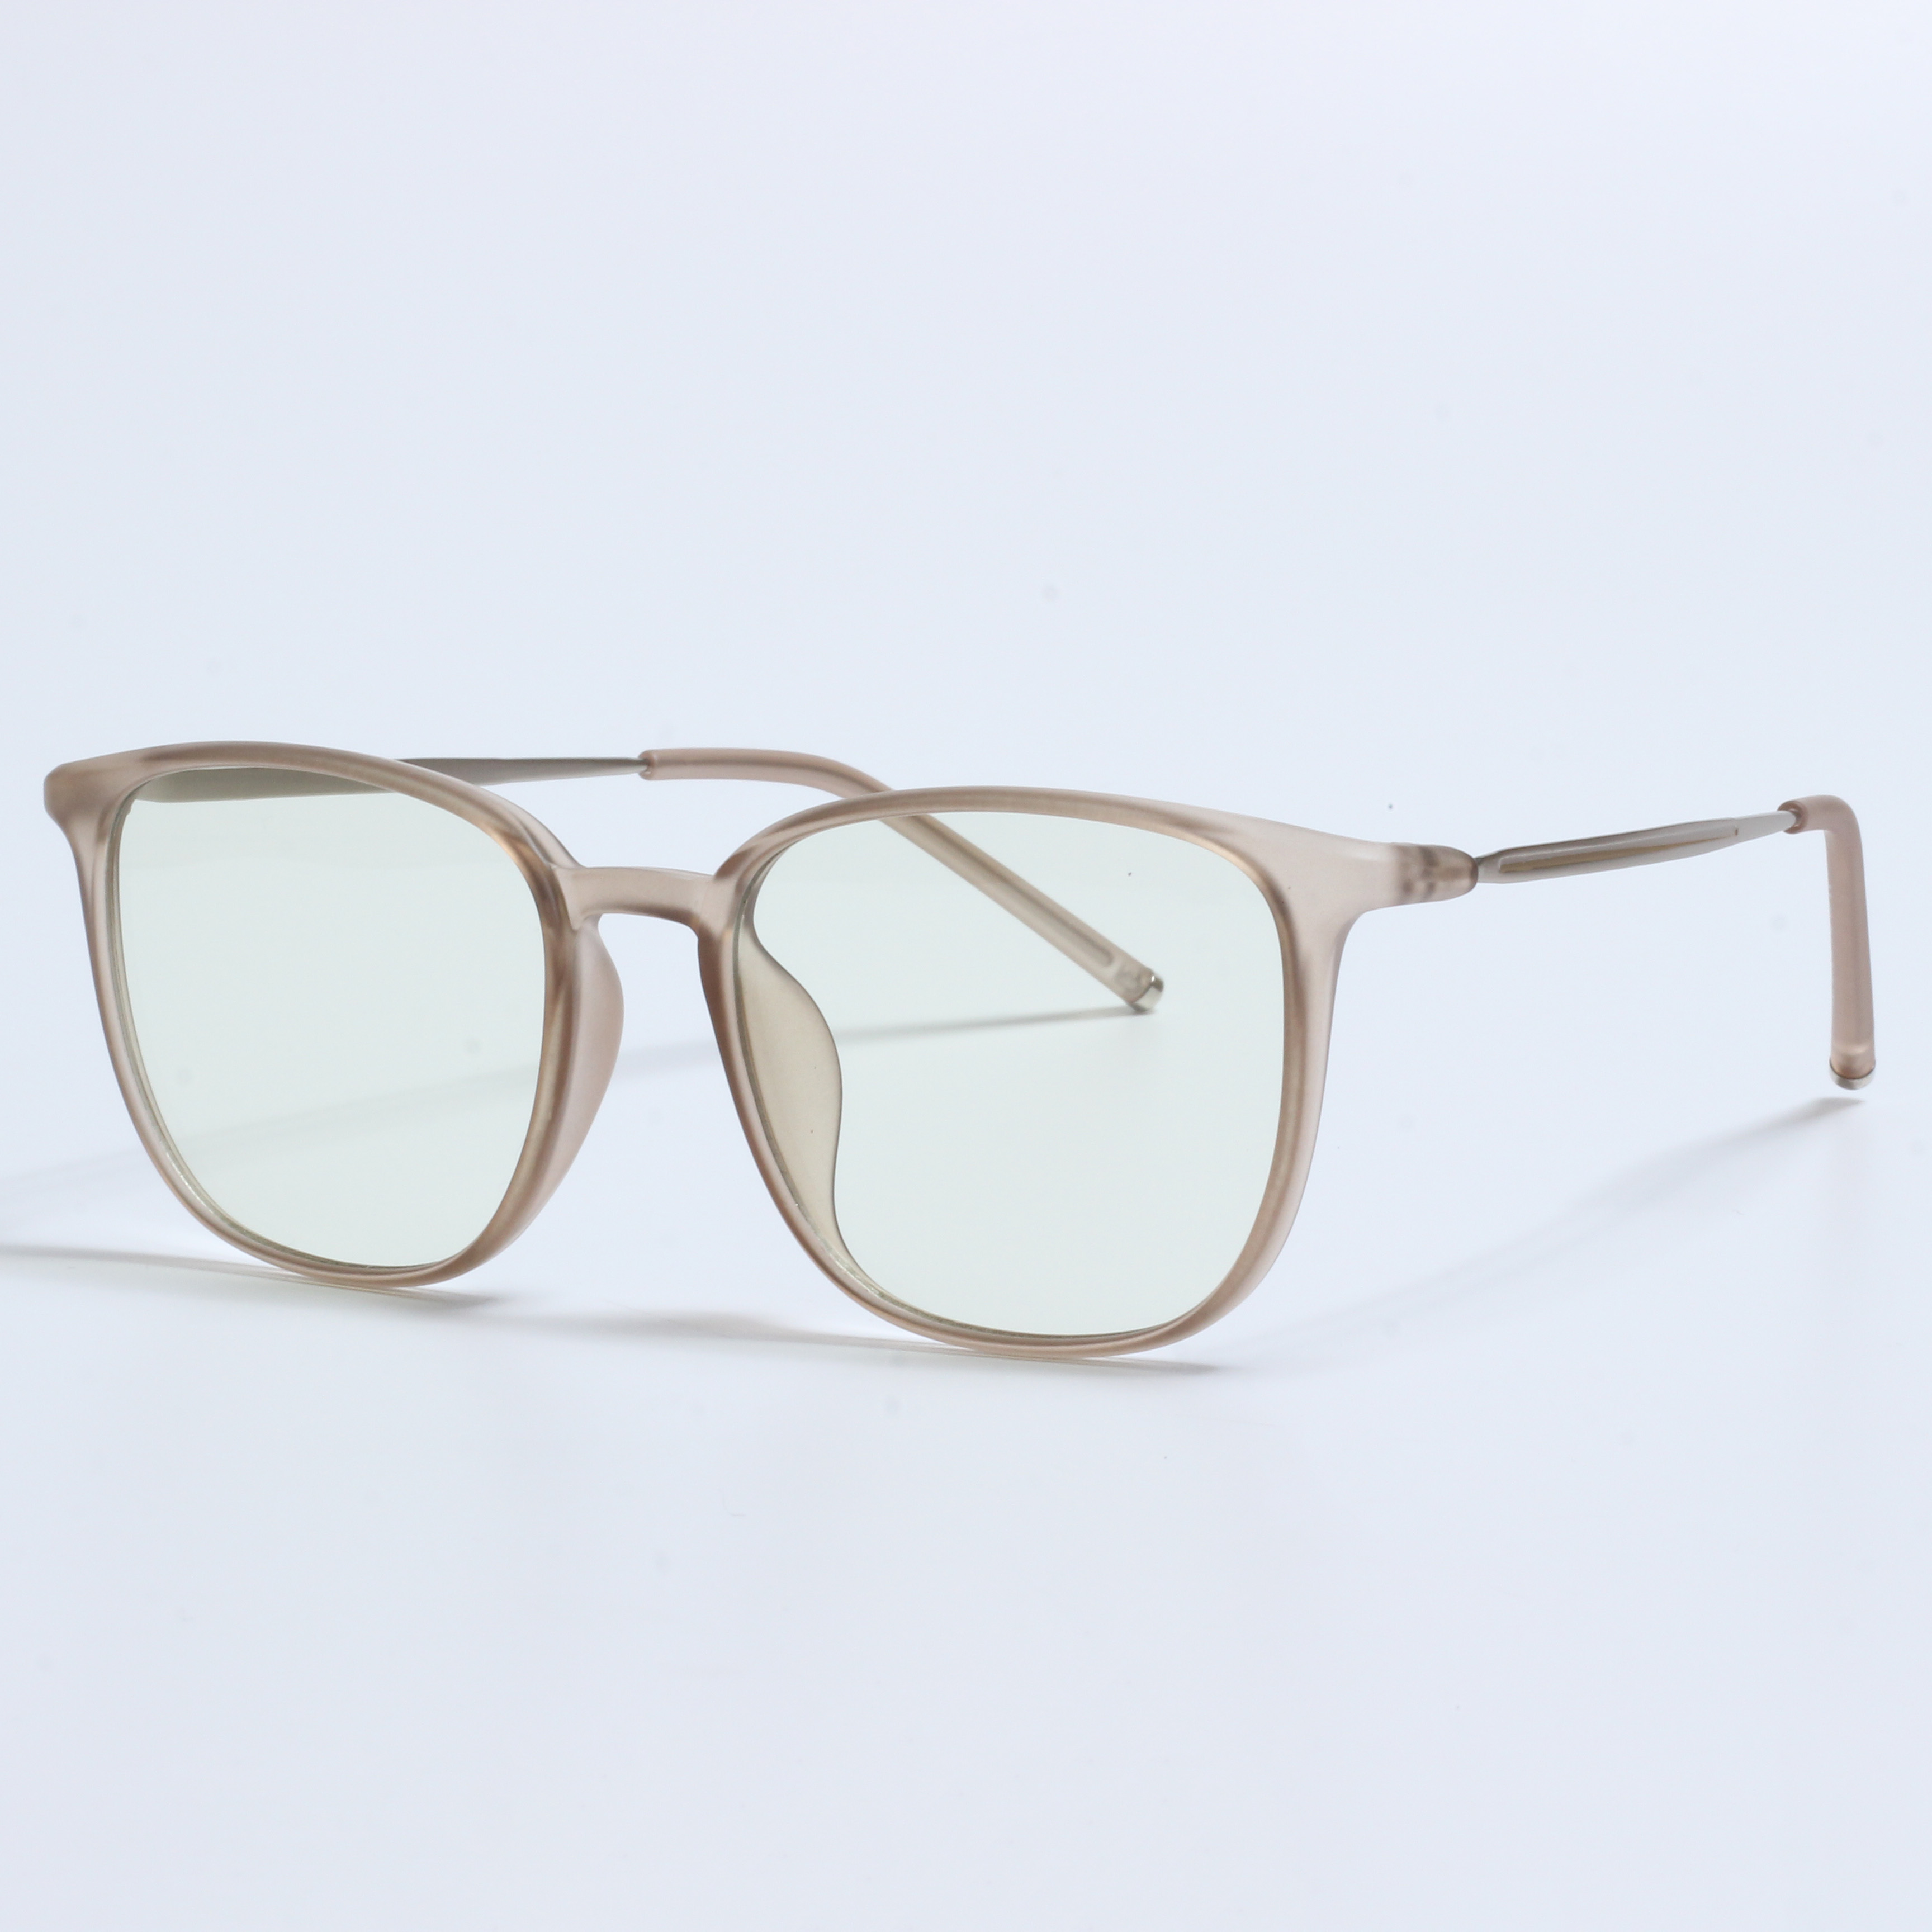 New retro lunette anti lumiere designer prescription glasses (6)